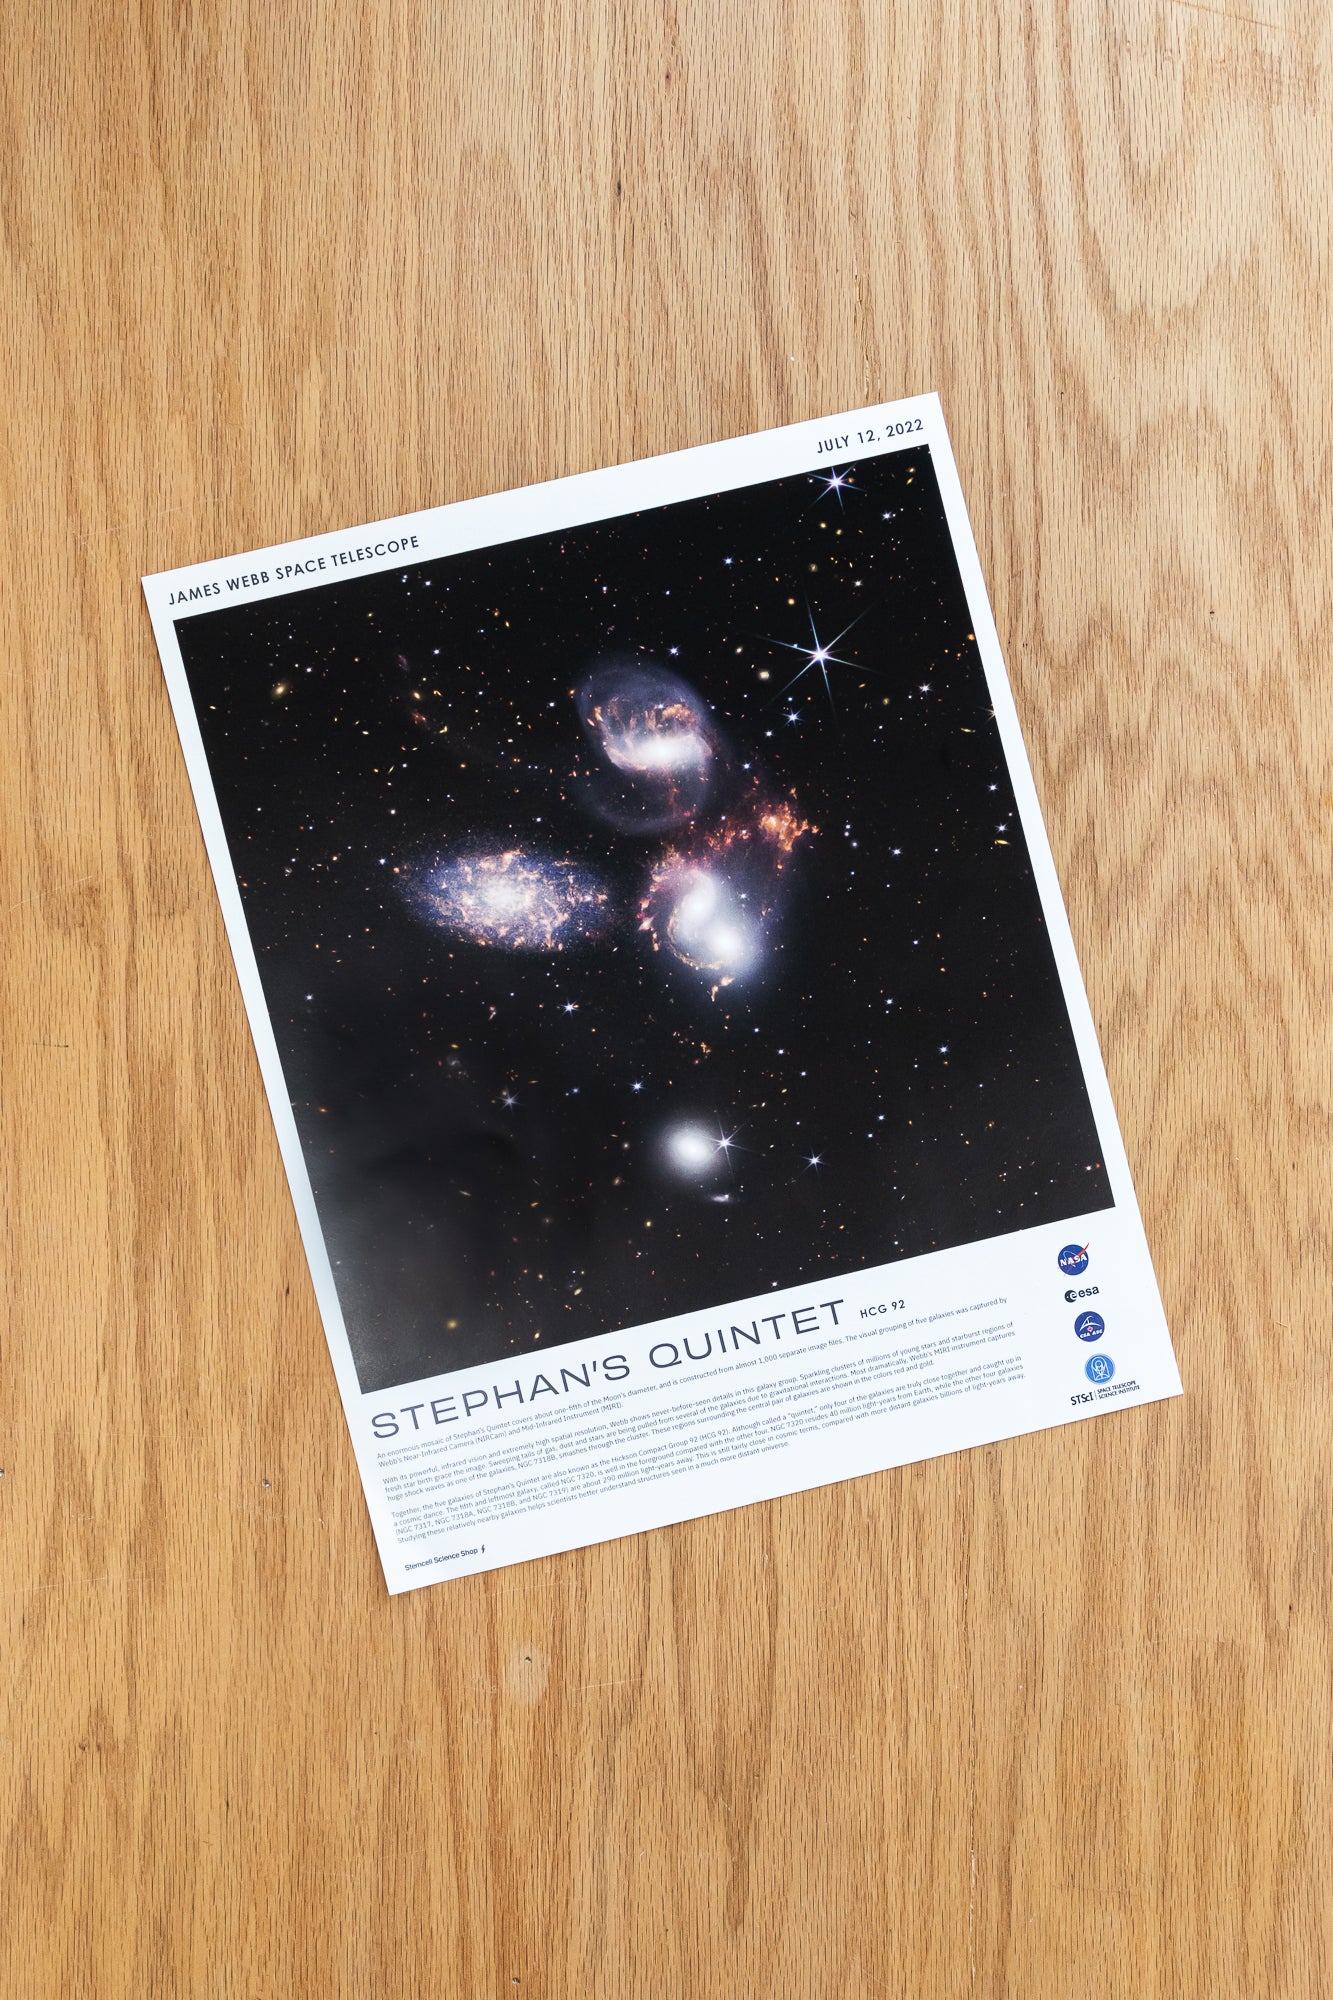 JWST Historic Poster #3 - Stephan's Quintet